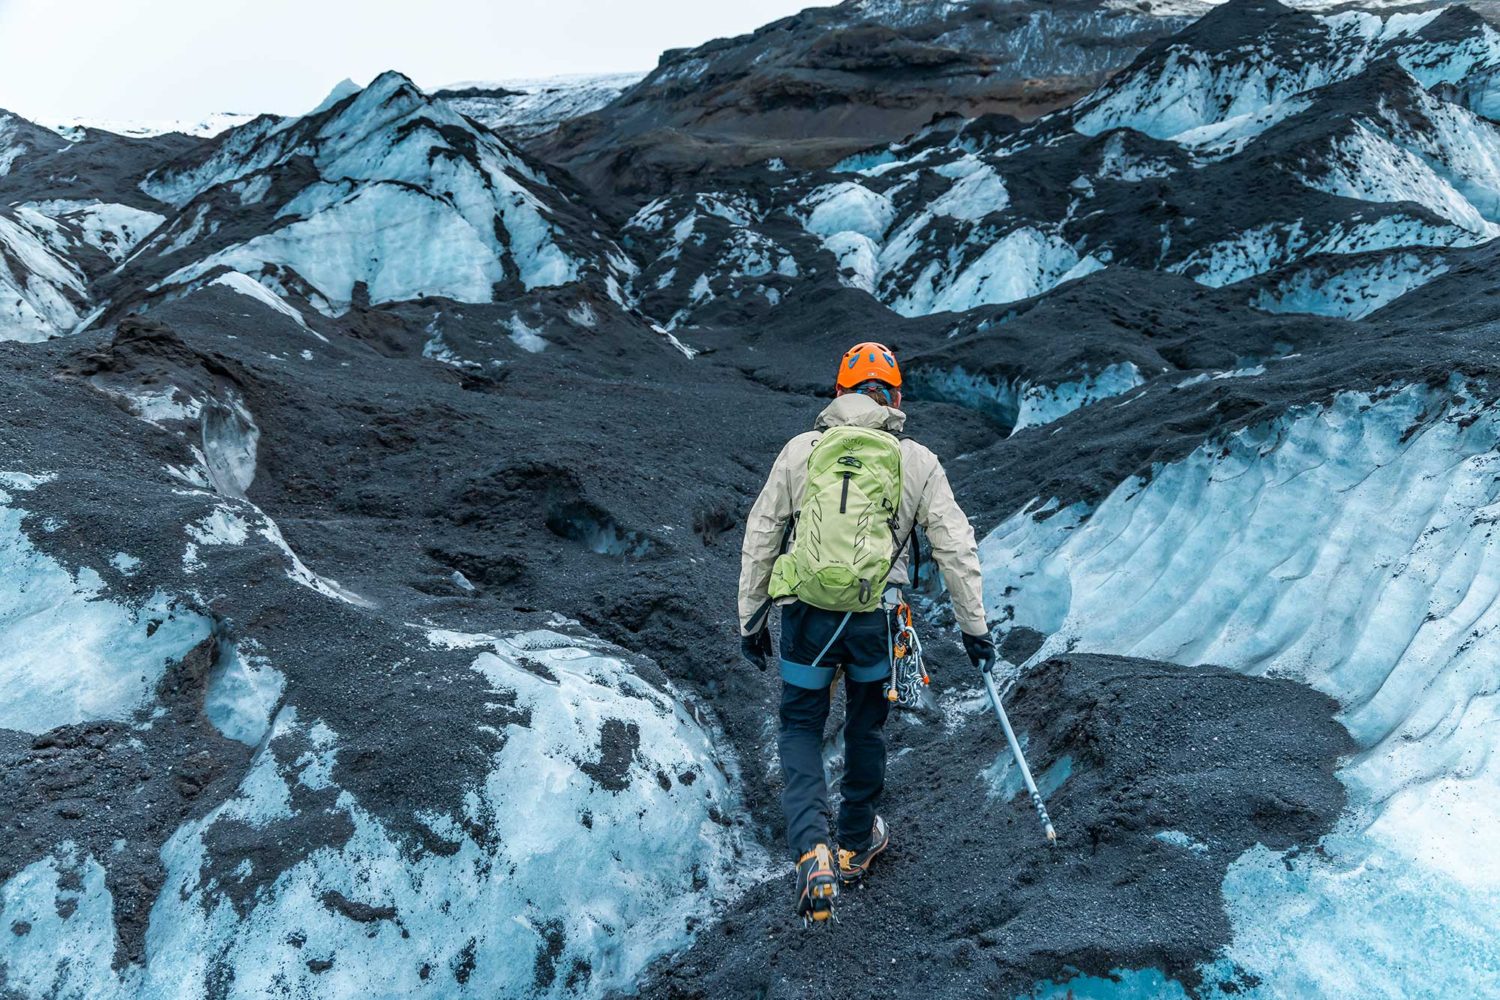 A man in safety gear walks on a glacier